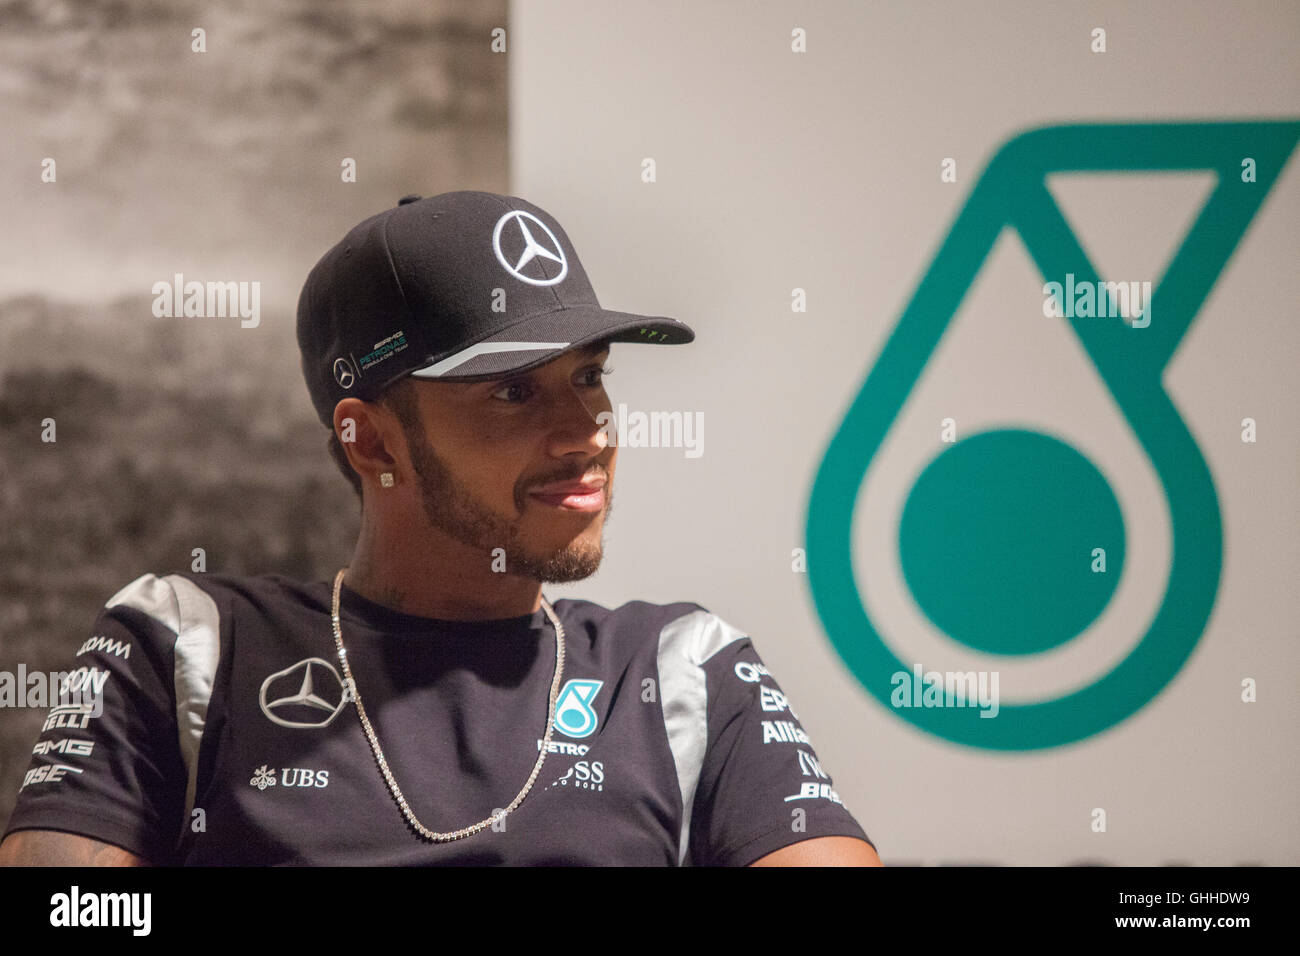 Kuala Lumpur, Malaisie. 28 Septembre, 2016. Pilote de F1 Lewis Hamilton lors d'une conférence de presse à Kuala Lumpur, Malaisie. Crédit : Alexandra Radu/Alamy Live News Banque D'Images